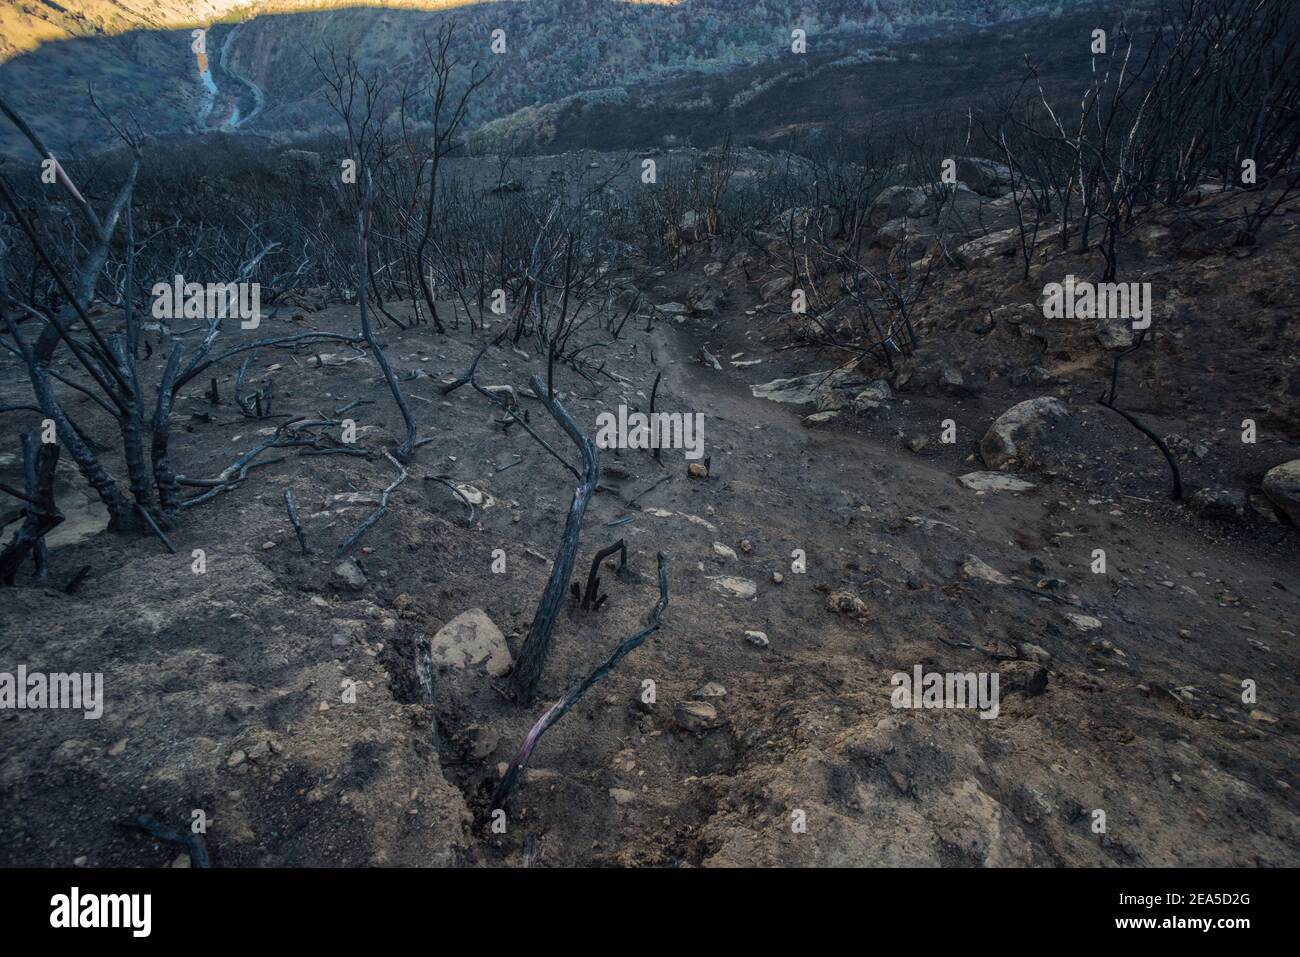 Le paysage brûlé à la suite de feux de forêt dans les montagnes de la chaîne côtière de Californie, le feu a balayé la zone brûlant toute la végétation. Banque D'Images